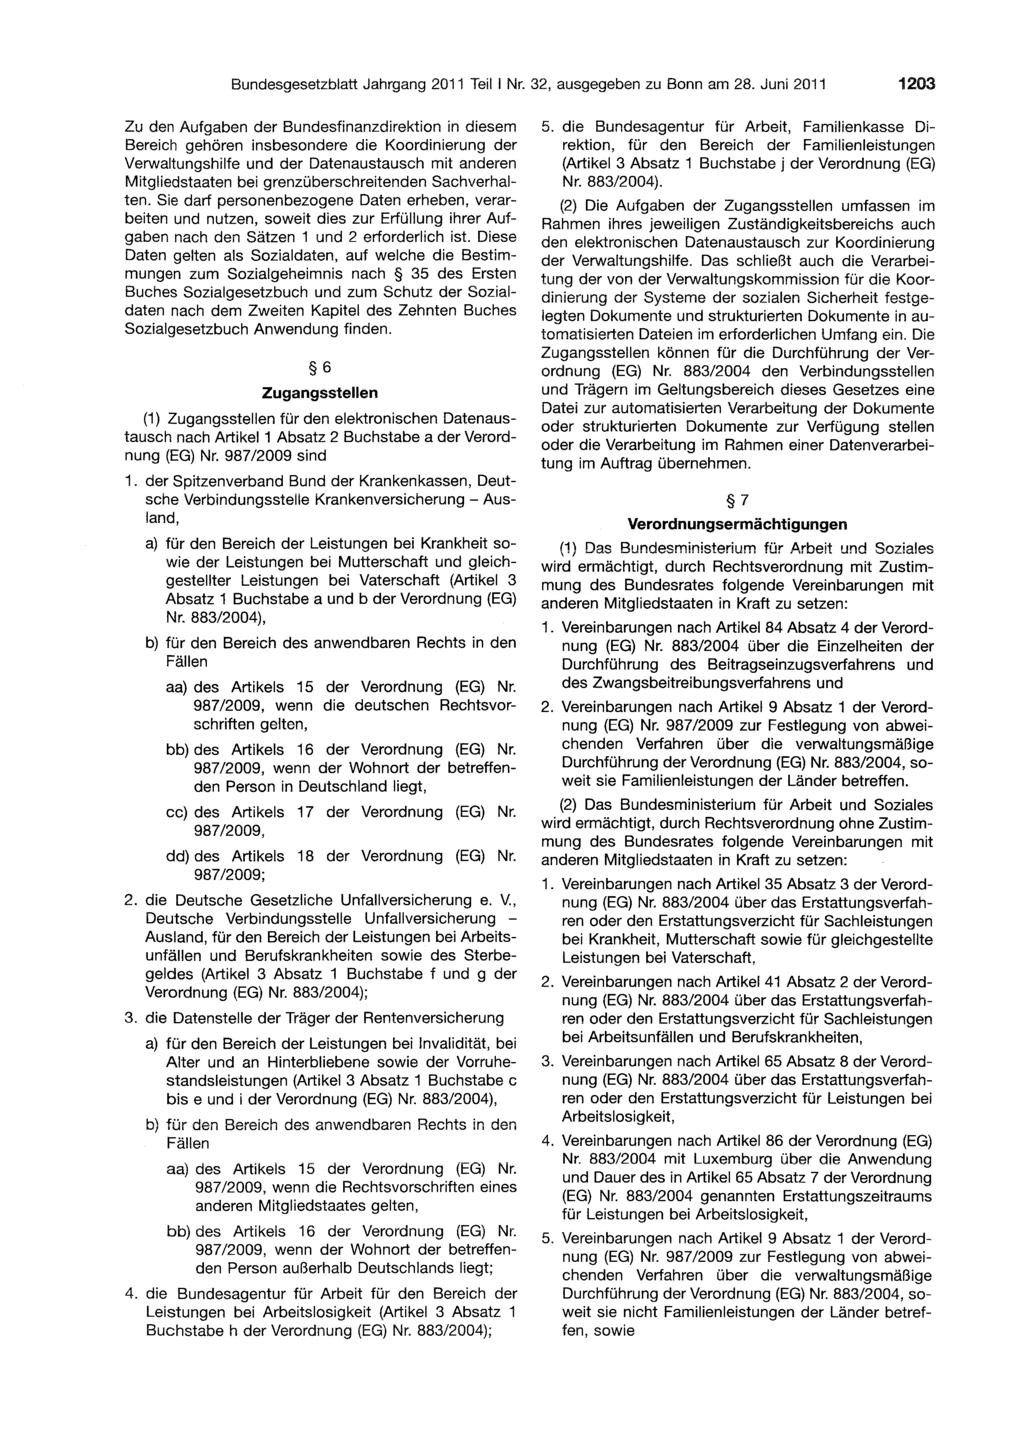 Bundesgesetzblatt Jahrgang 2011 Teil I Nr. 2, ausgegeben zu Bonn am 28.